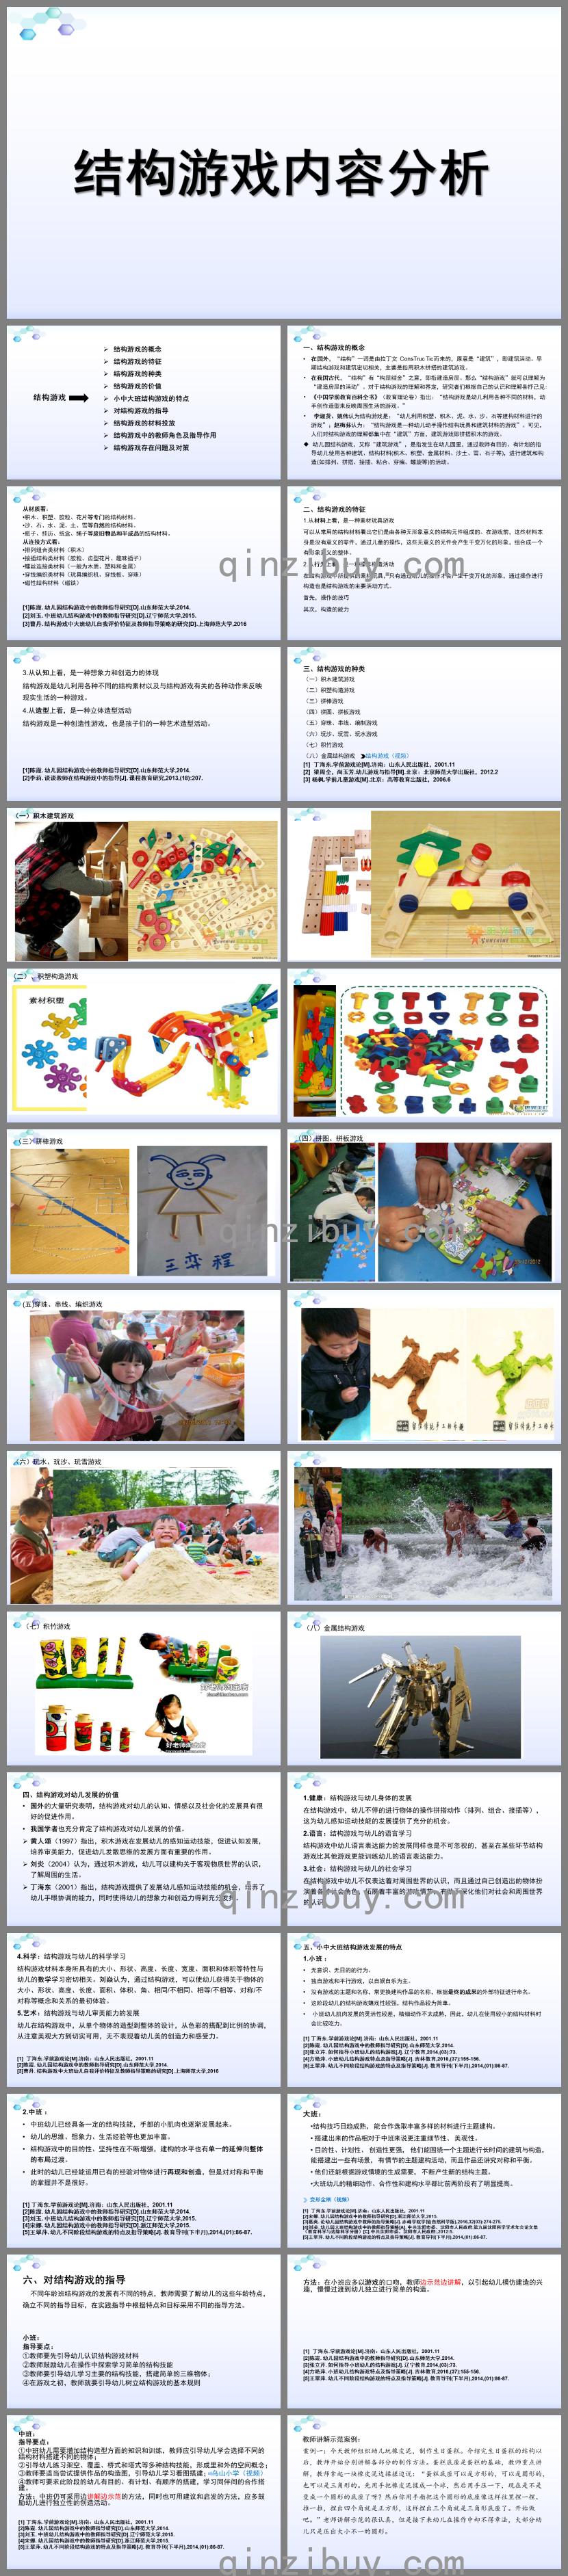 幼儿园结构游戏内容分析PPT课件